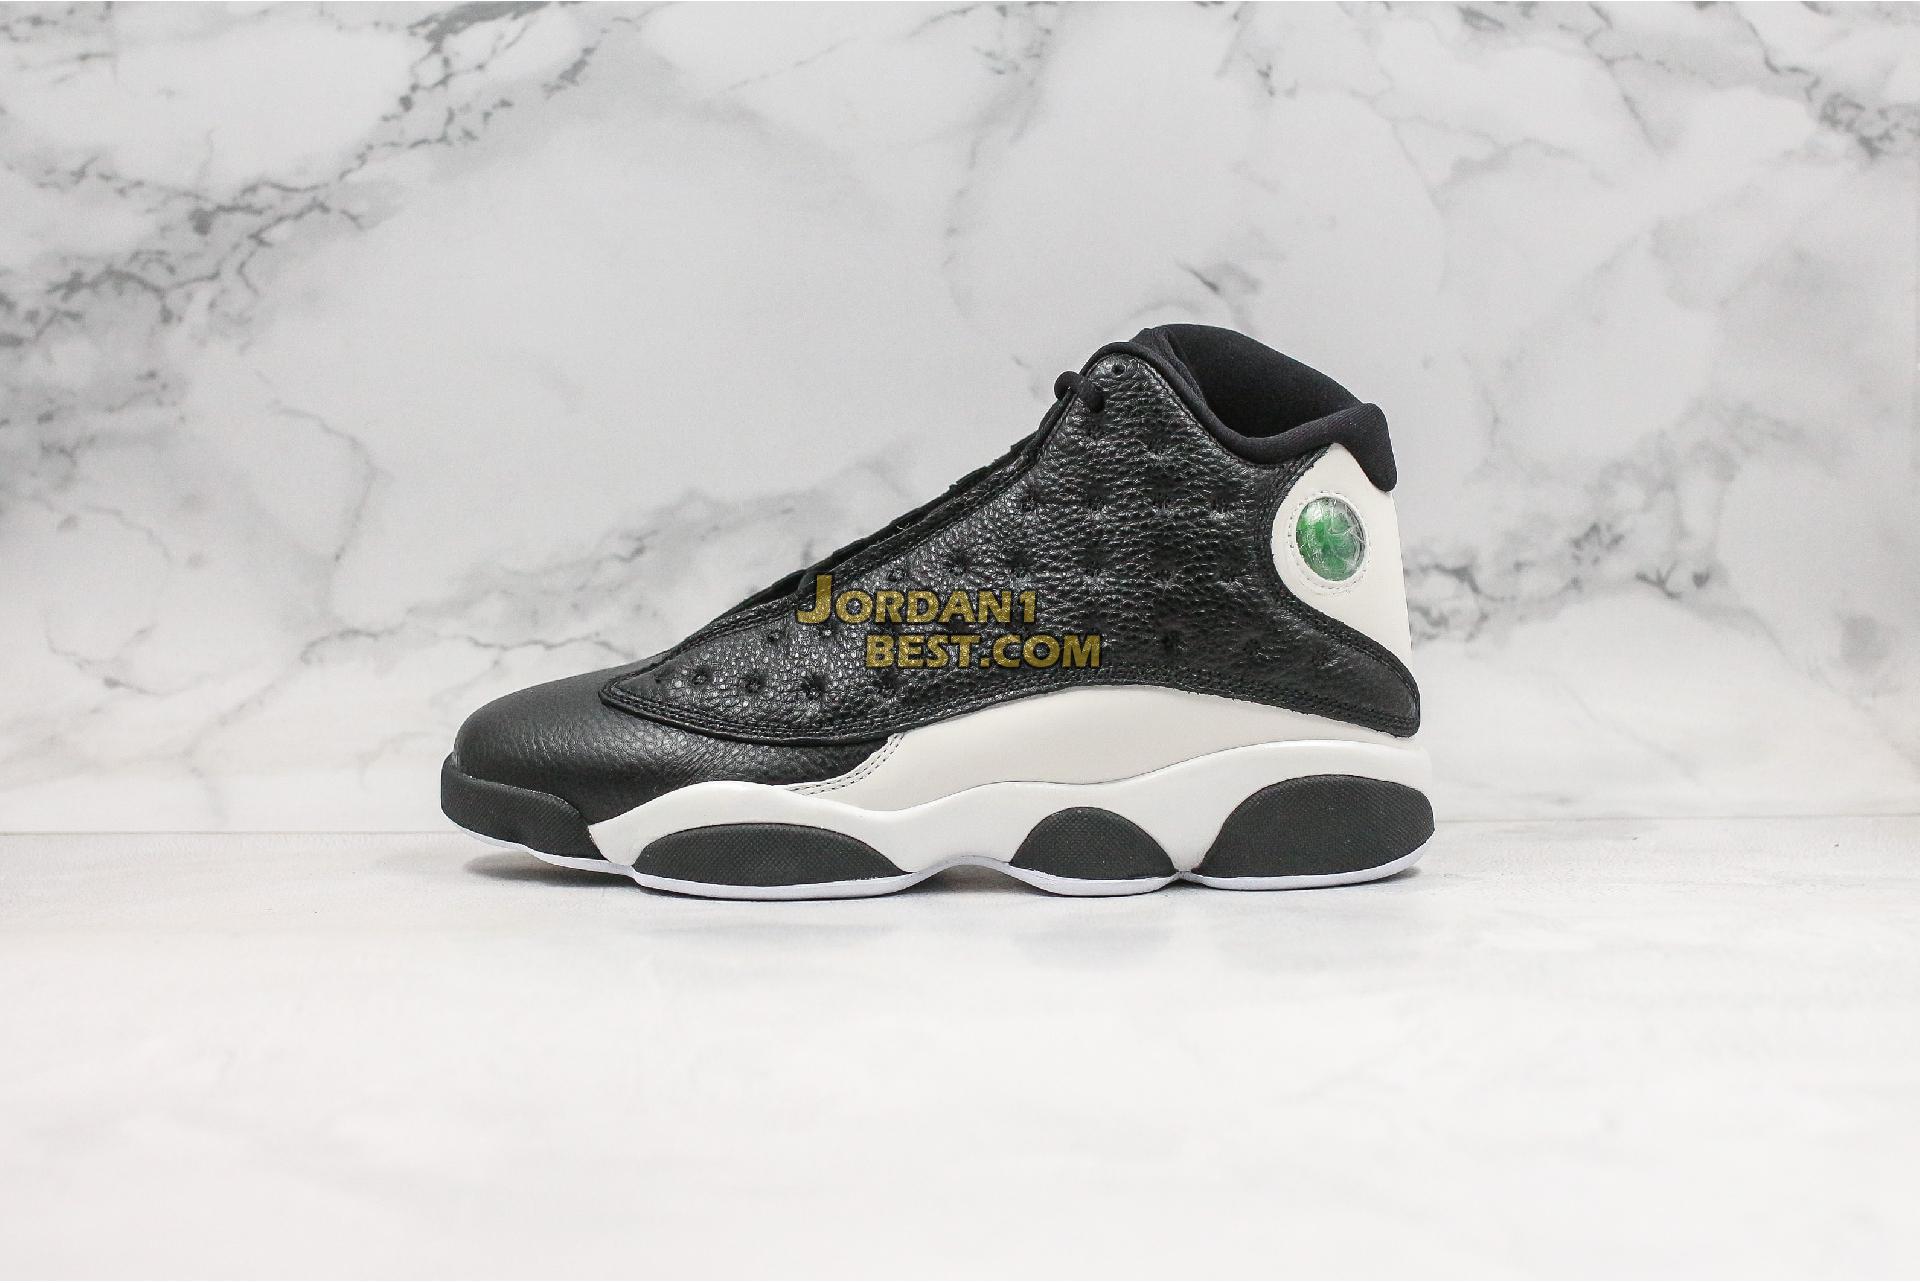 Air Jordan 13 best replica sneakers fake shoes buy